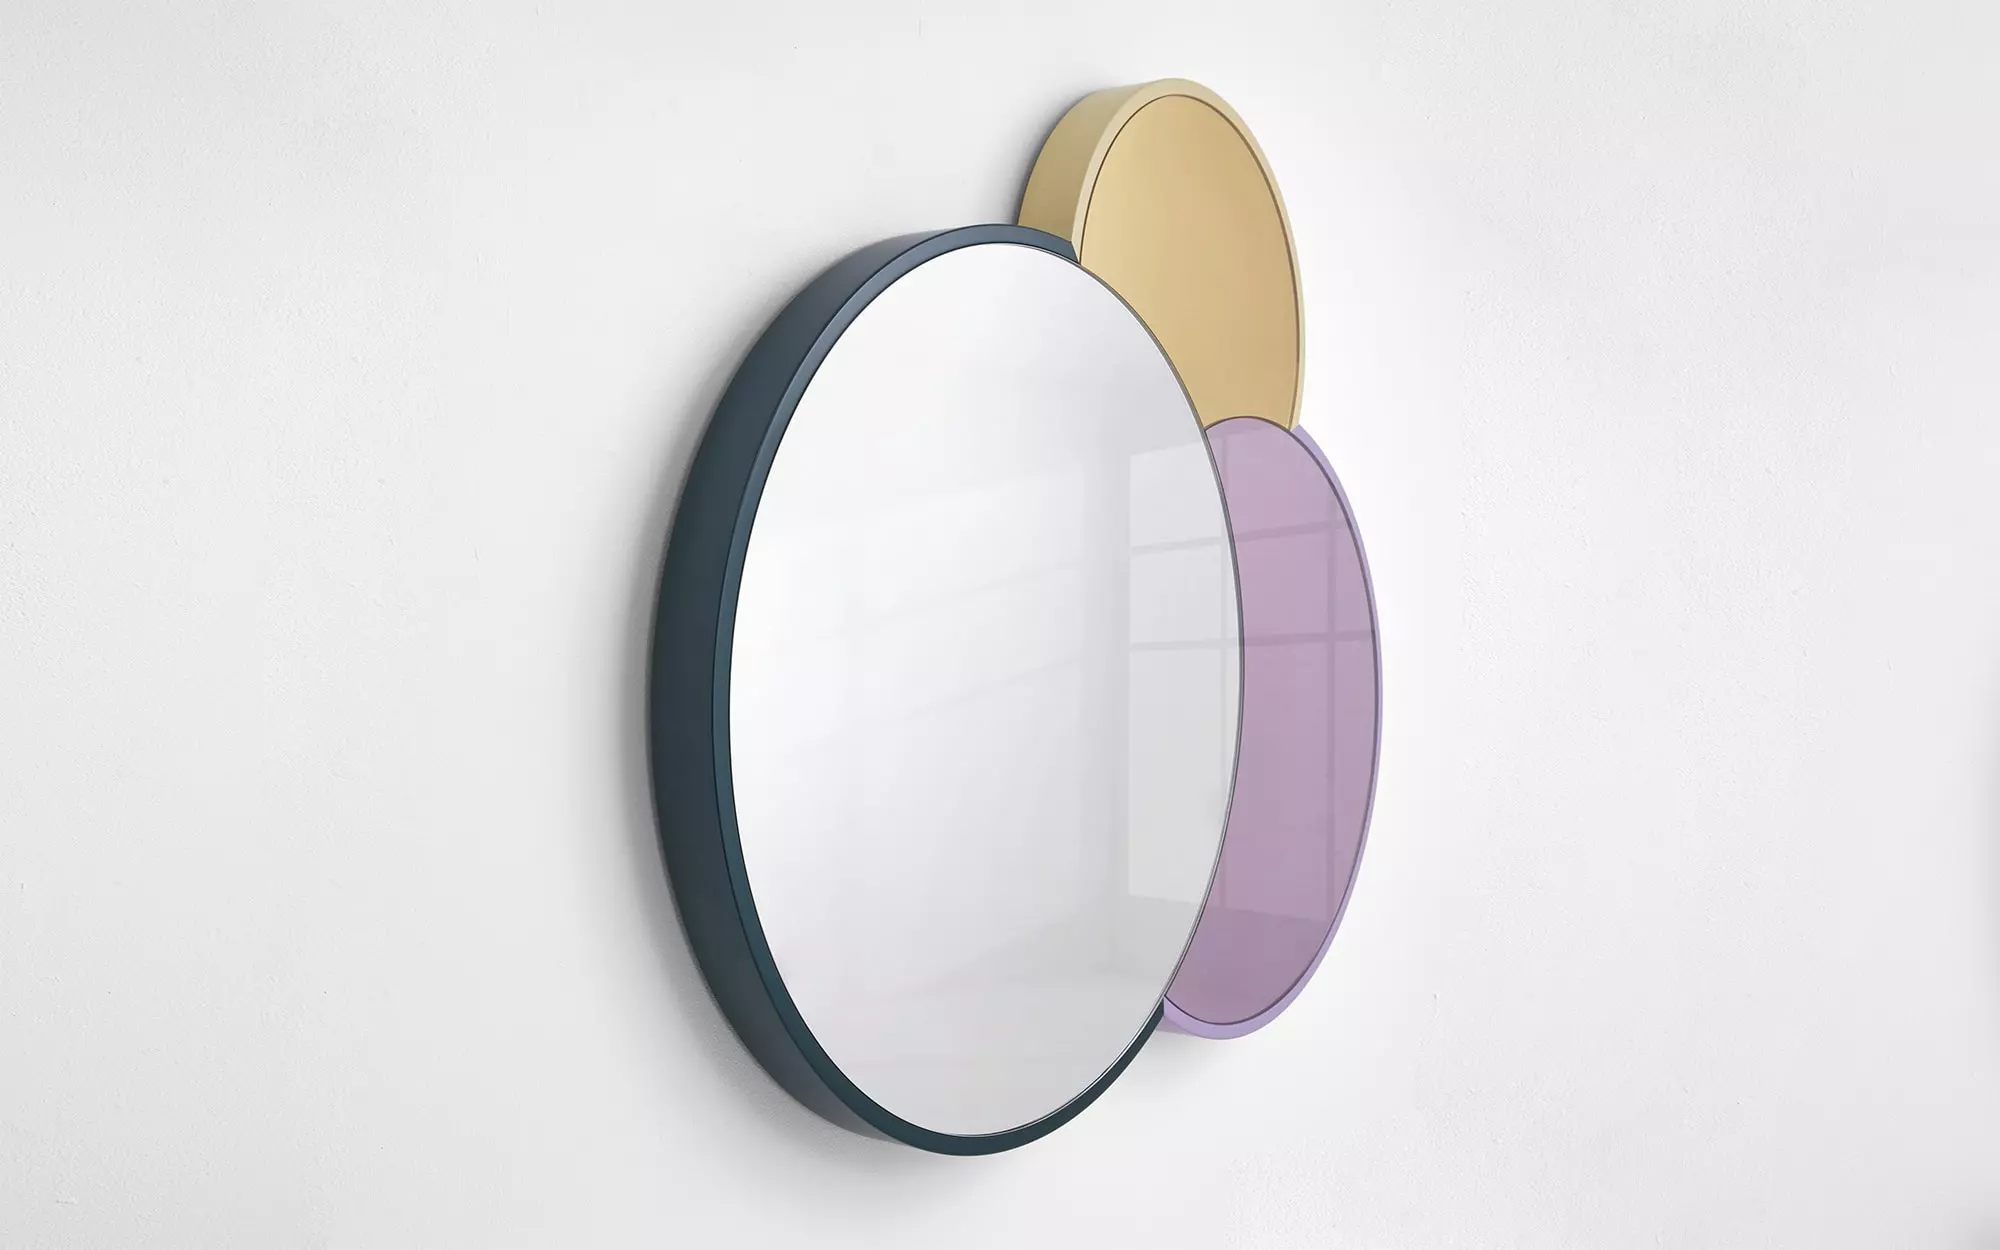 Triple Lune Mirror - Doshi Levien - Lucas Ratton x kamel mennour x Galerie kreo x Jacques Lacoste in Saint-Tropez.